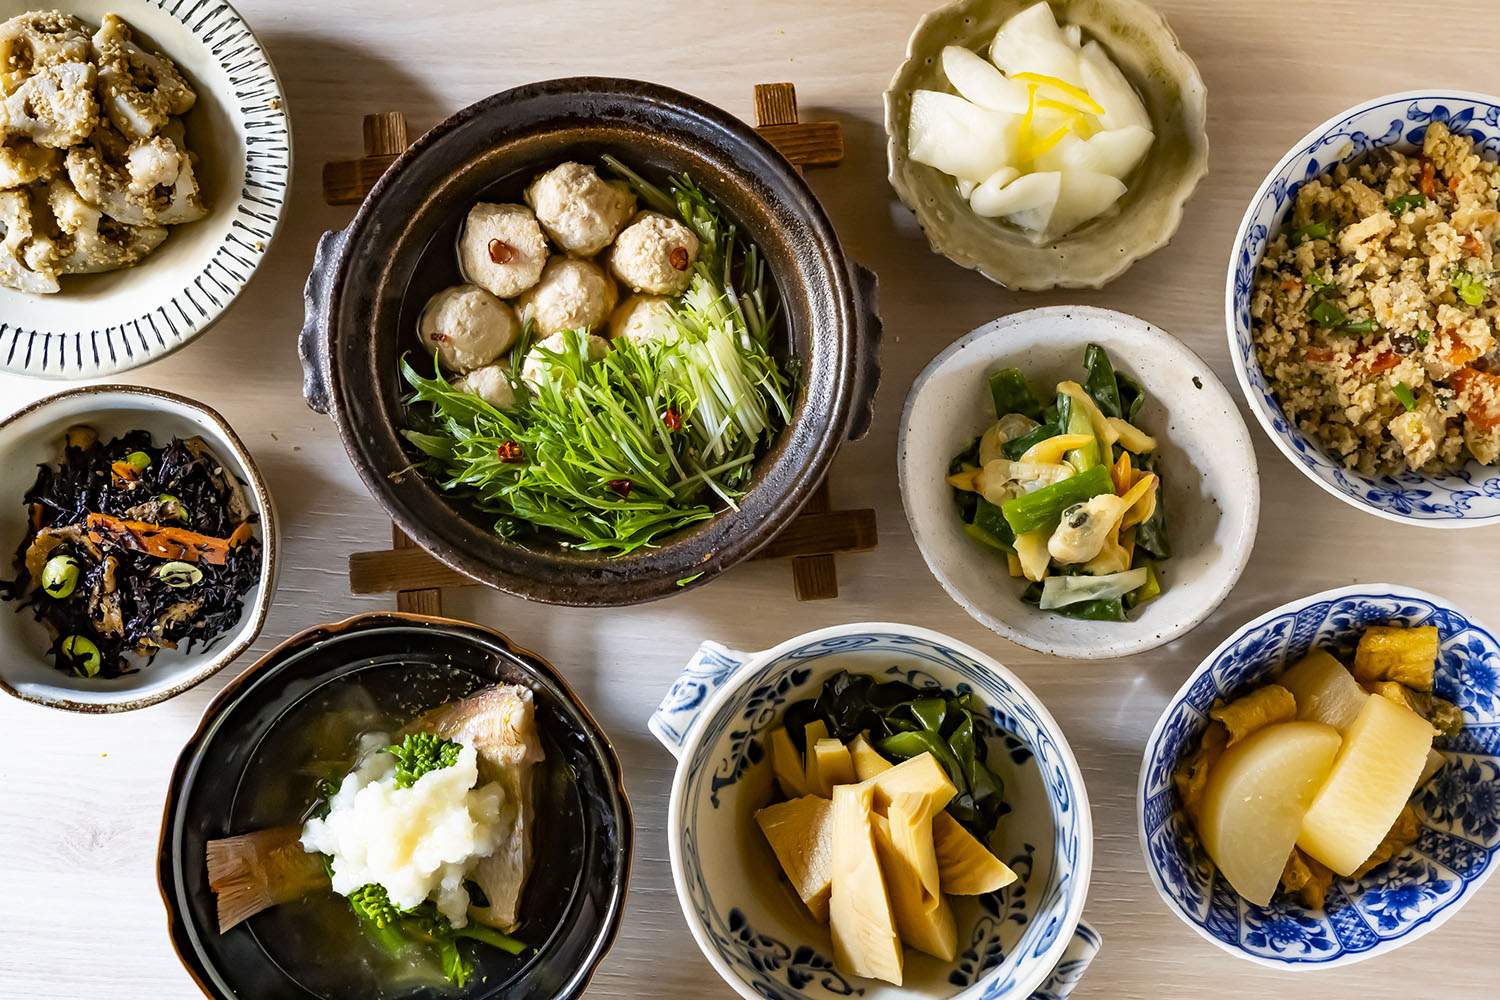 【京都美食推薦】Obanzai京都傳統家常料理的享用方式 | 認識京都媽媽們集結智慧所製做的家庭料理